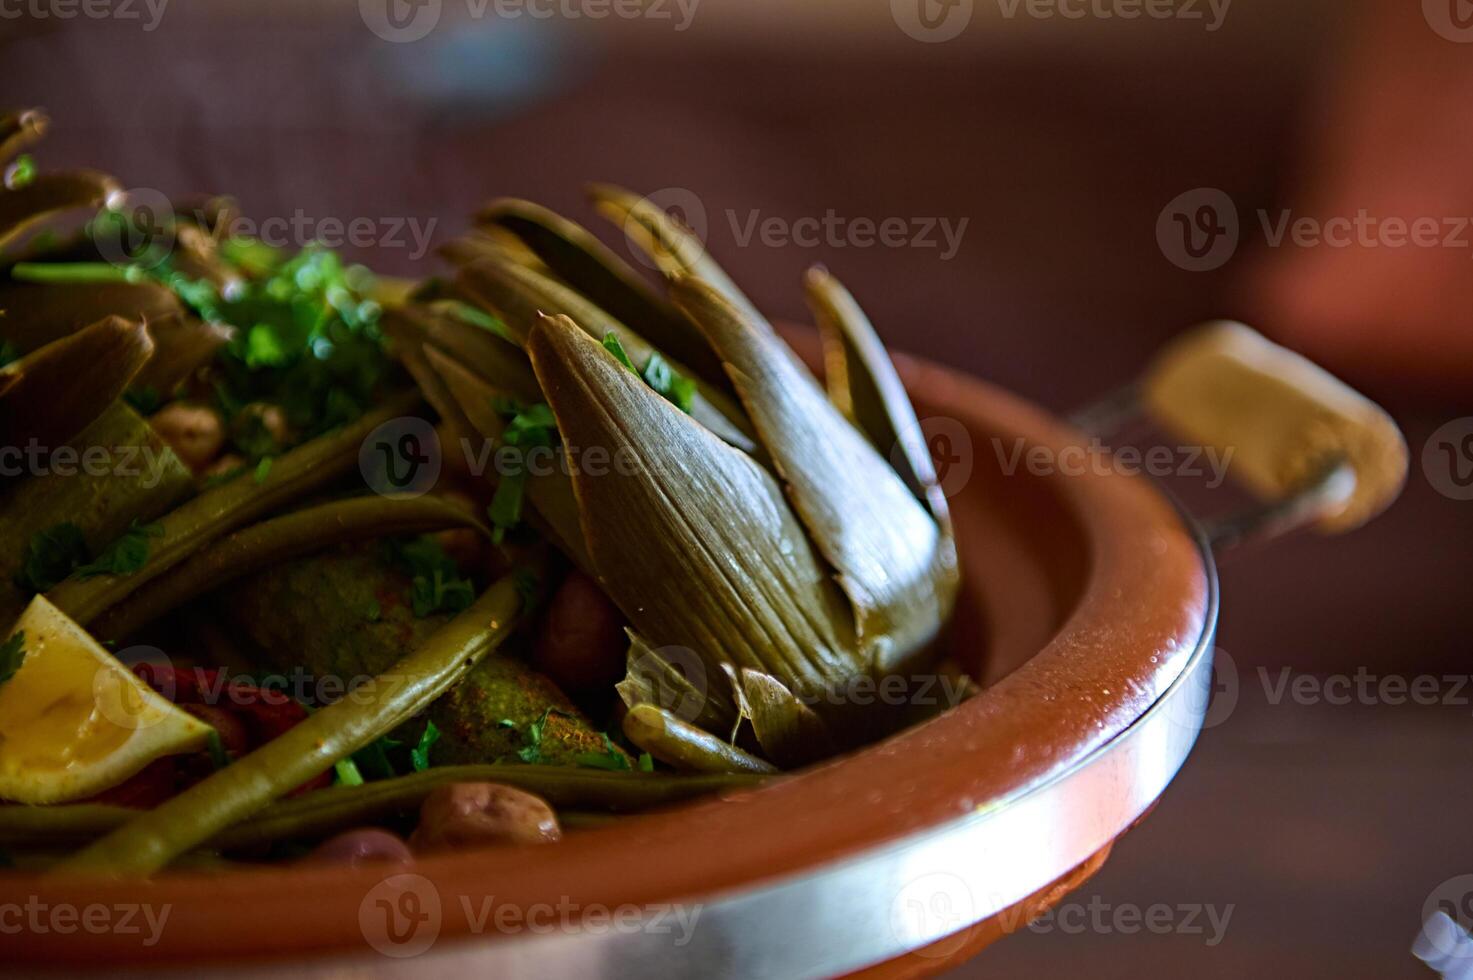 extreem detailopname foto voor voedsel blog van een heerlijk lekker maaltijd met gestoomd artisjokken in Marokkaans tajine klei pot.